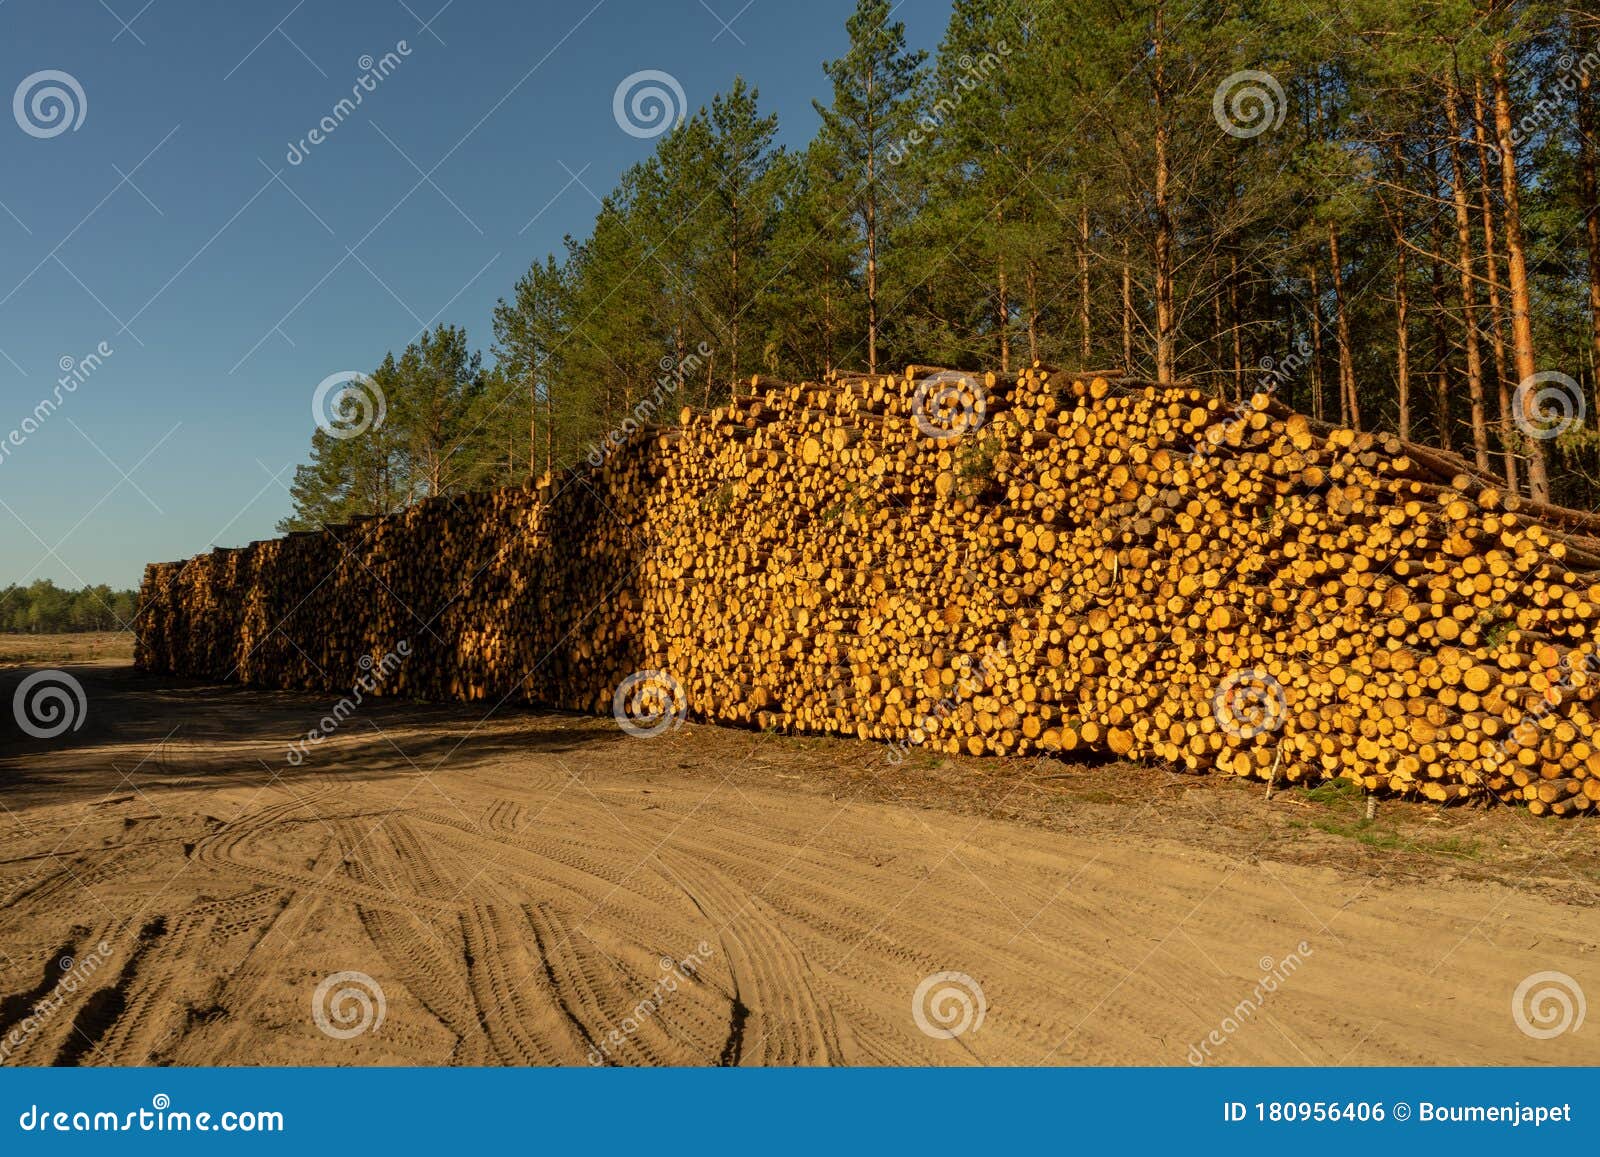 trees cut down per day